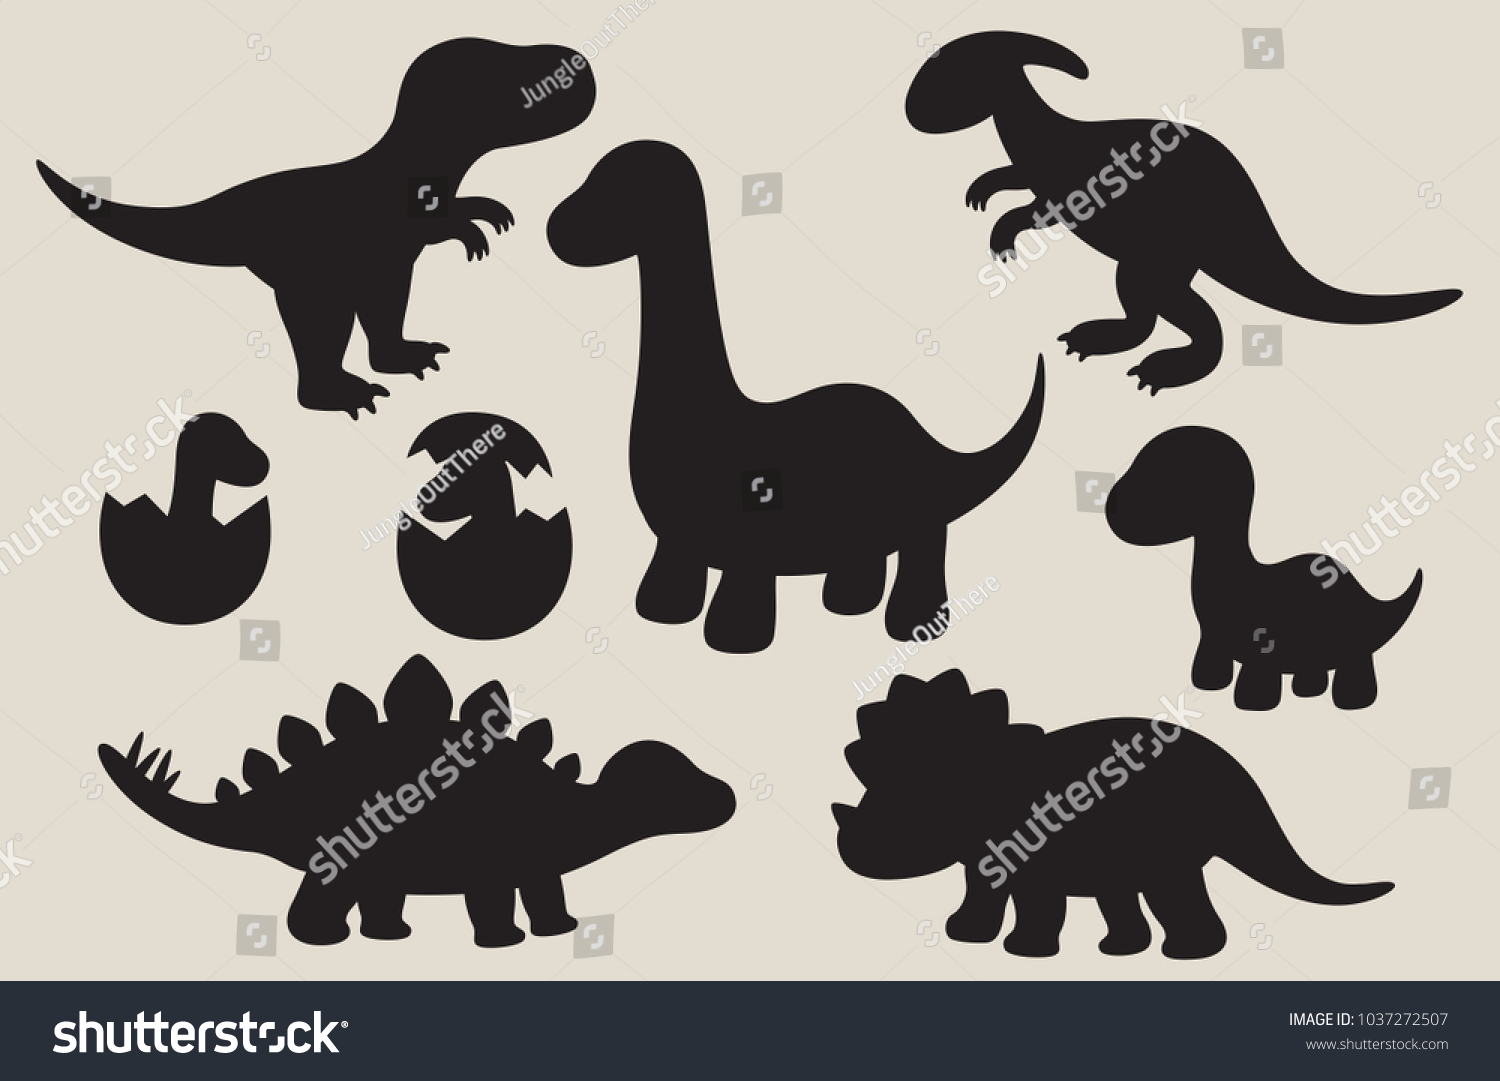 SVG of Vector illustration of dinosaur silhouette including Stegosaurus, Brontosaurus, Velociraptor, Triceratops, Tyrannosaurus rex, and Spinosaurus. svg